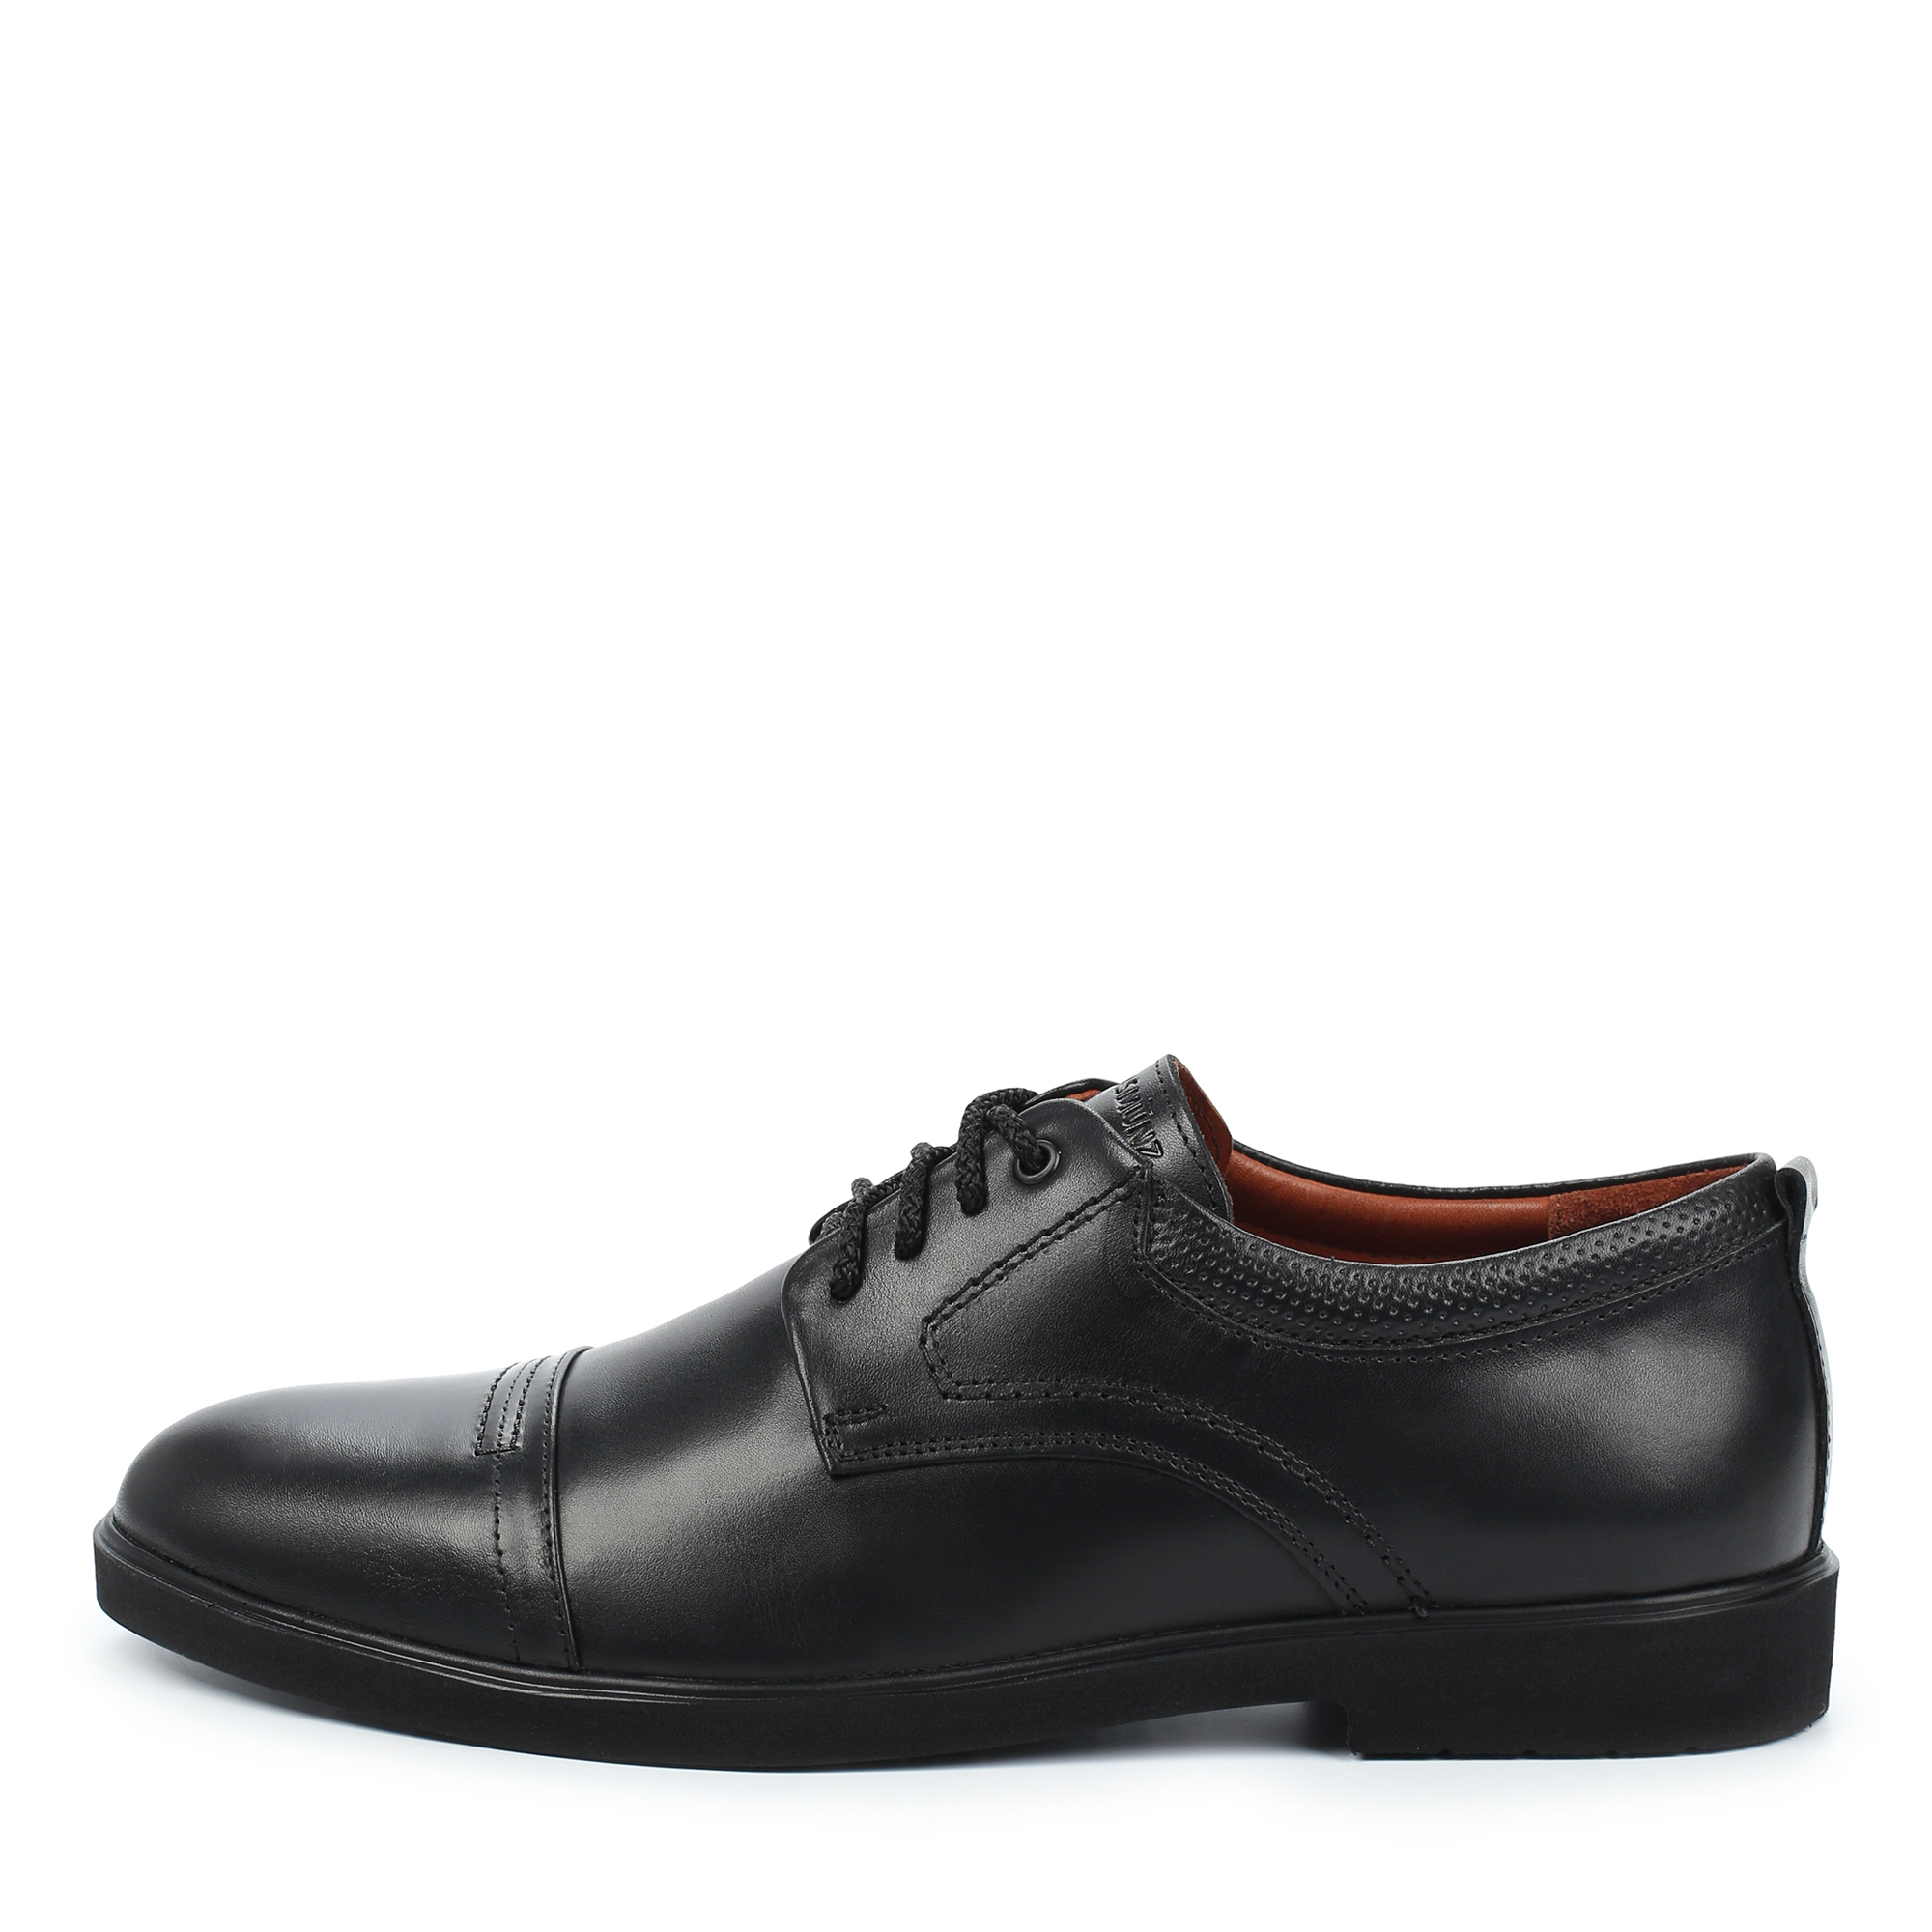 Туфли/полуботинки Thomas Munz 306-013A-1102, цвет черный, размер 42